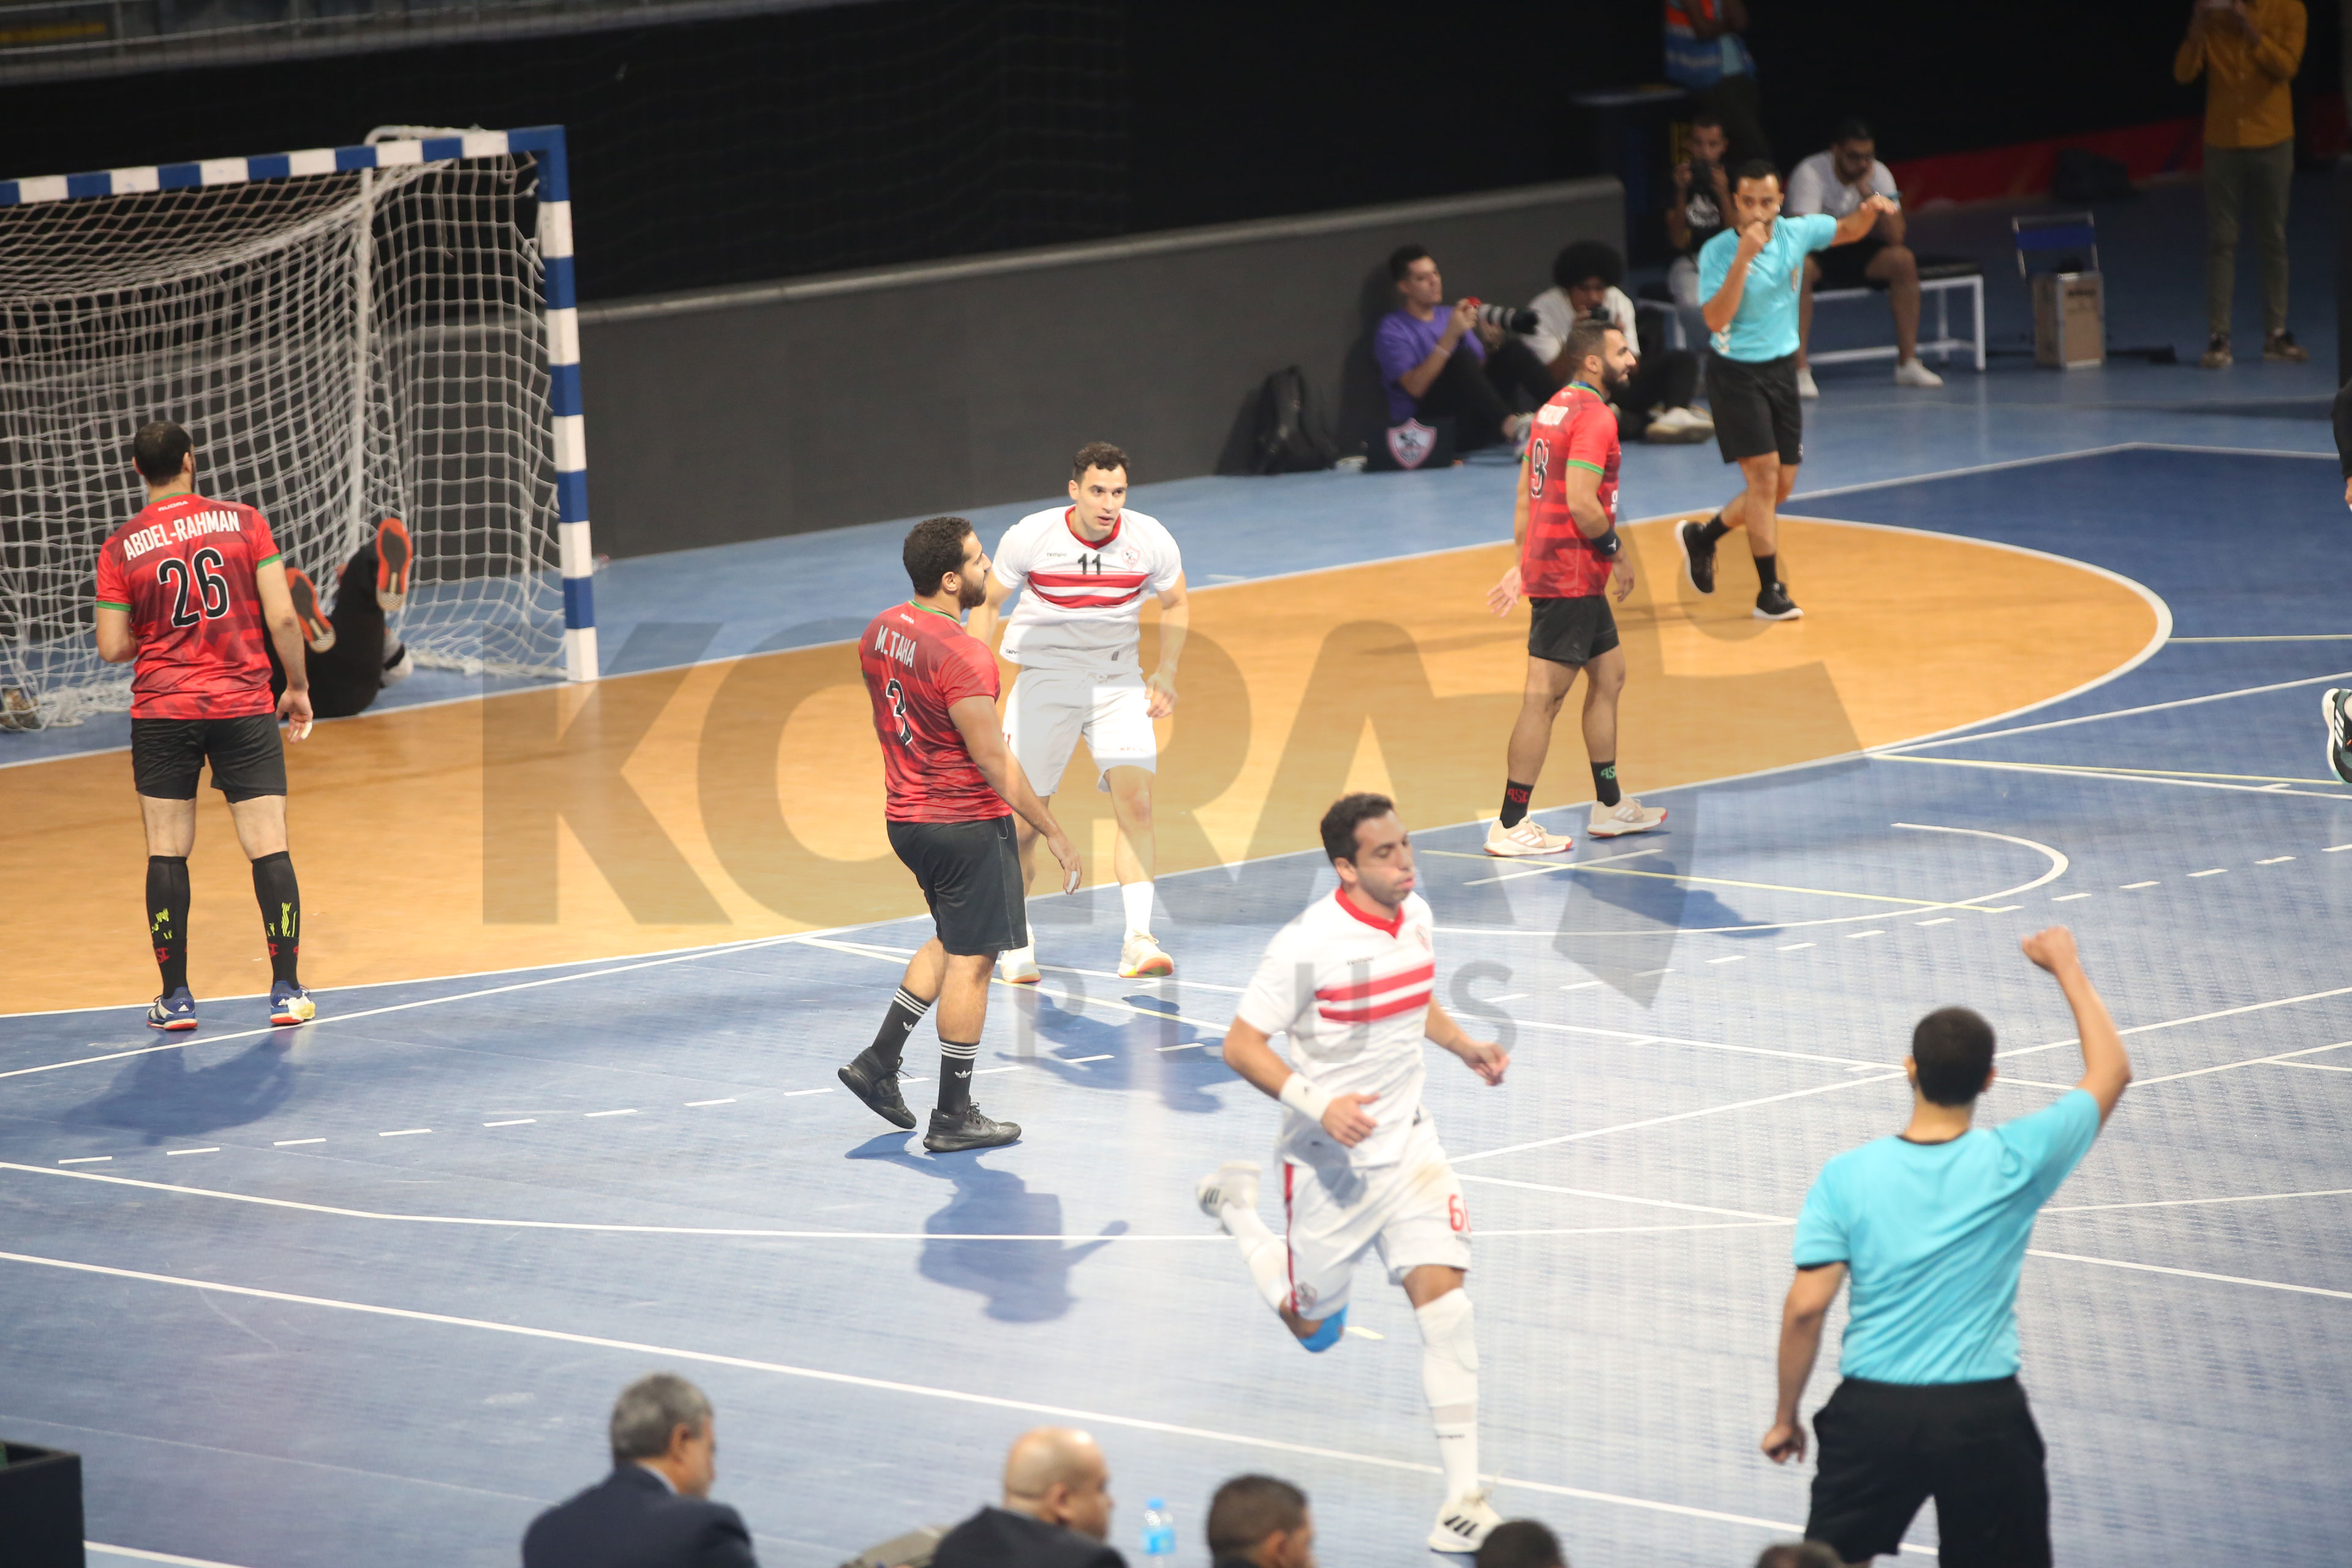 الزمالك يحقق الفوز على سبورتنج في أولى مباريات السوبر المصري لكرة اليد